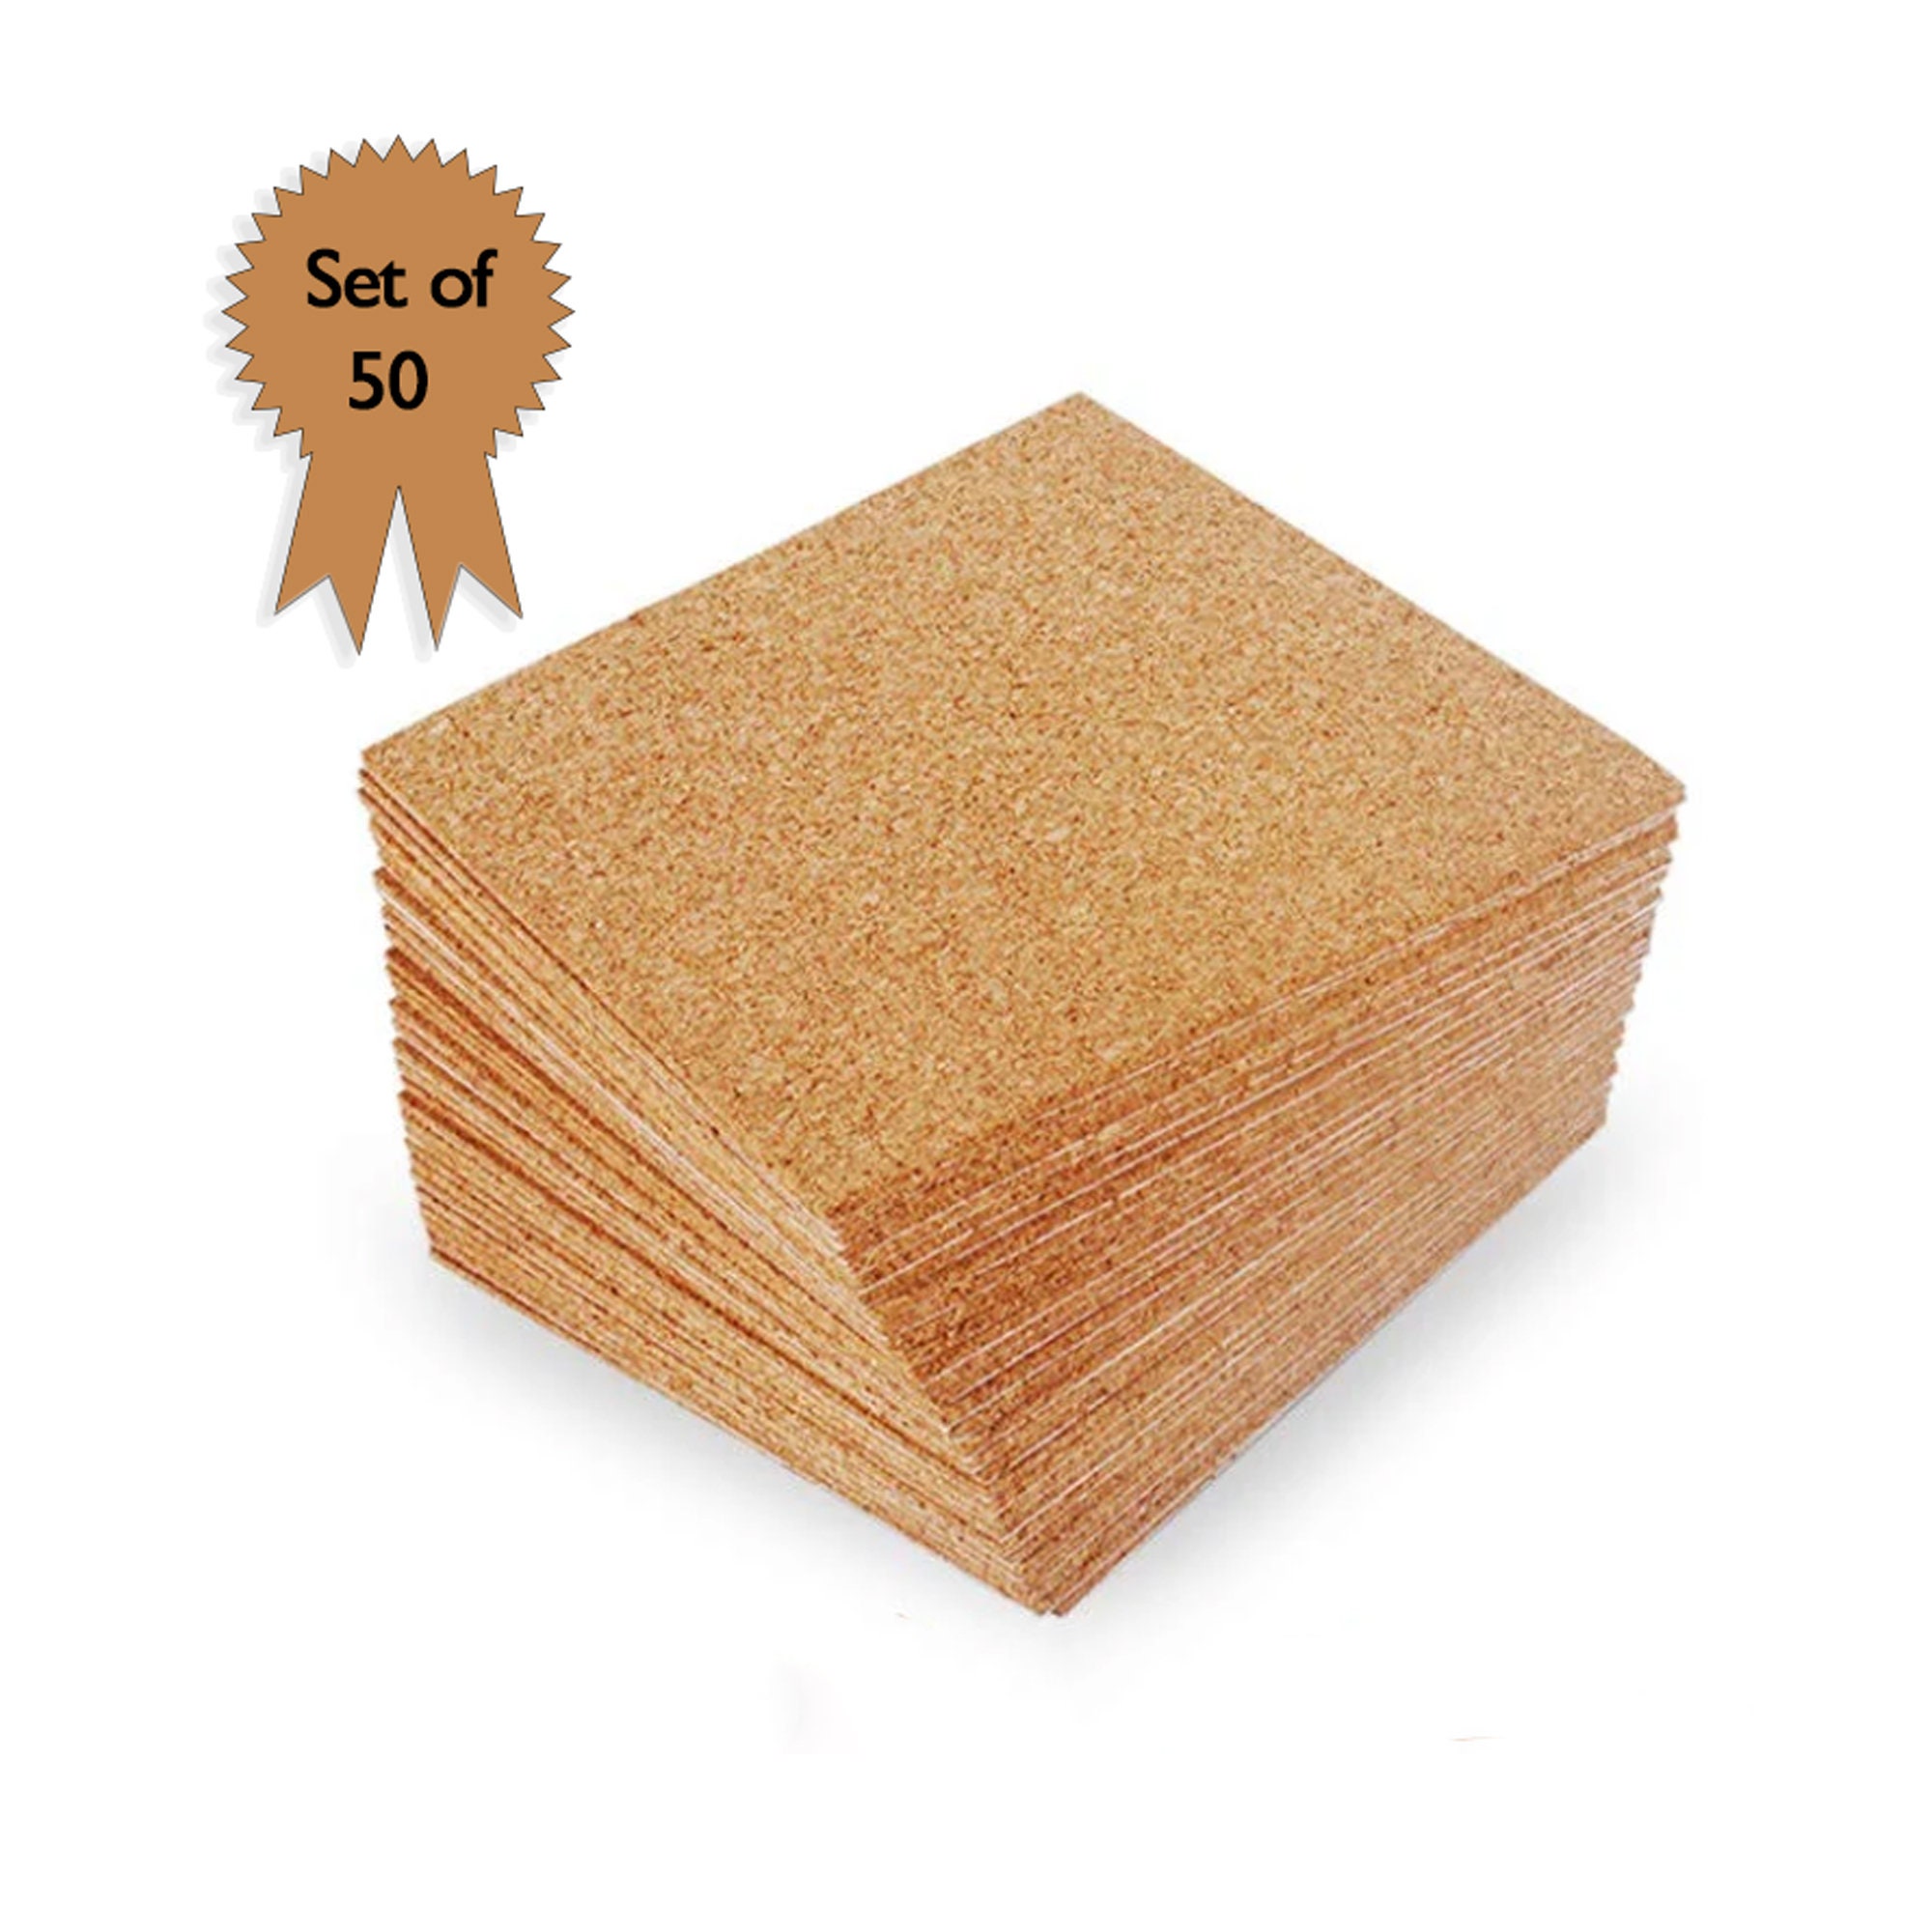 100 Pcs Self-adhesive Cork Coasters,cork Mats Cork Backing Sheets